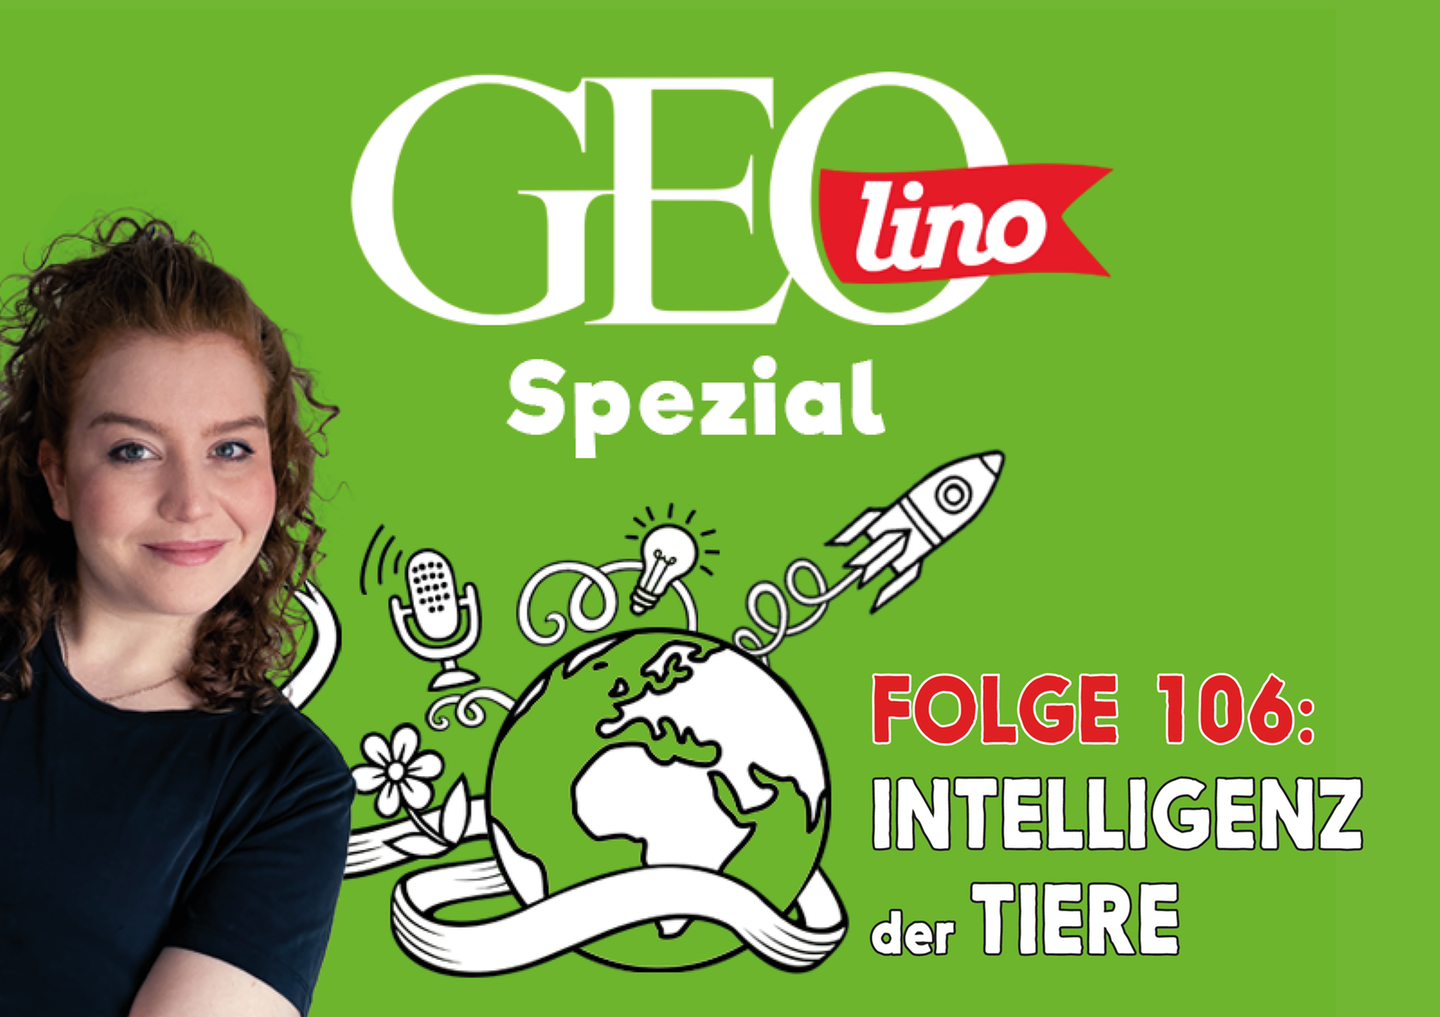 In Folge 106 unseres GEOlino-Podcasts geht es um die Intelligenz der Tiere